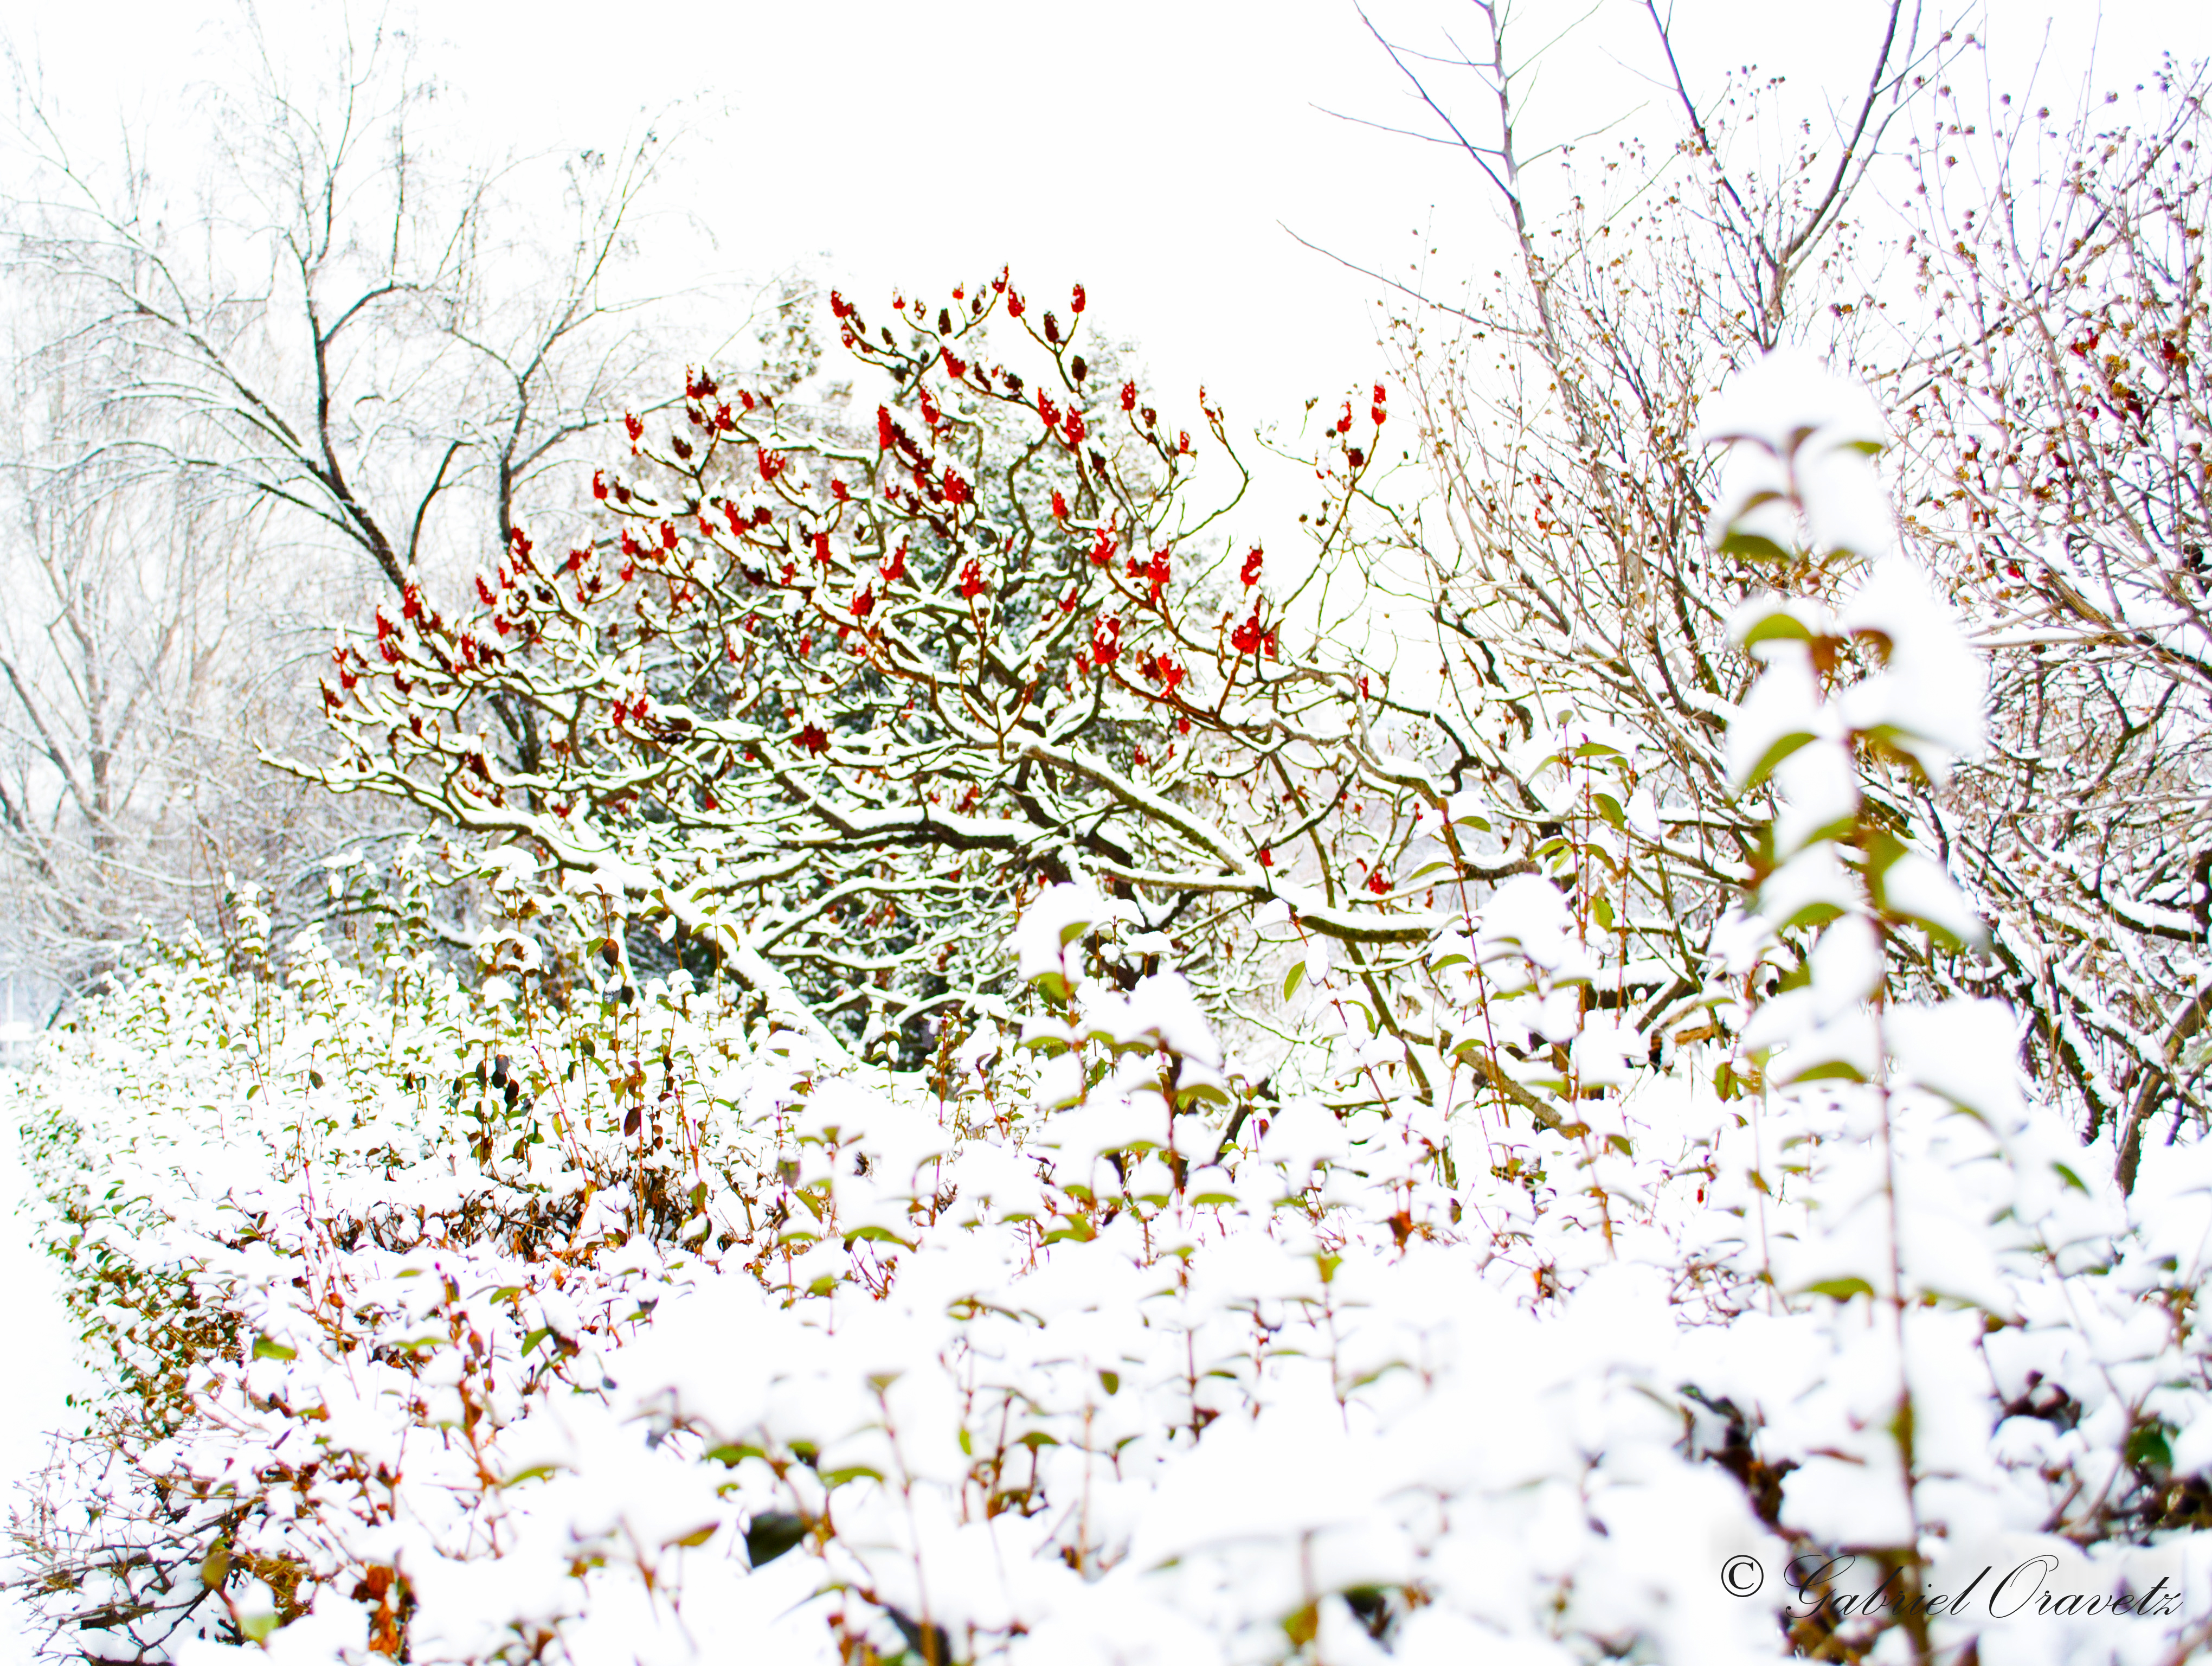 Winter Flowers By Gabrieloravetz